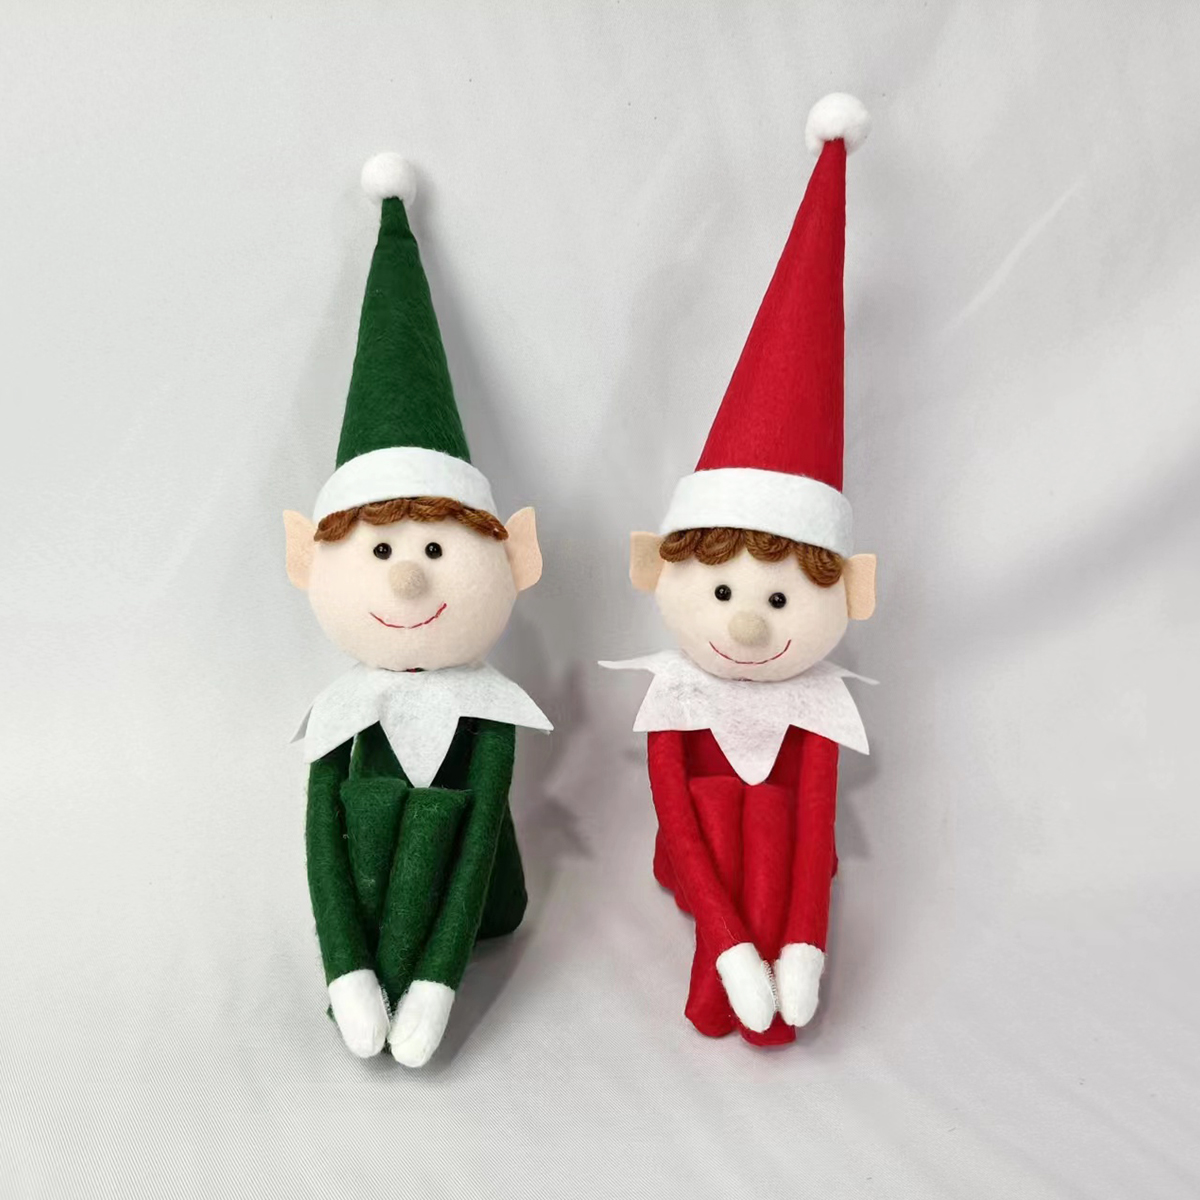 Jolie mini poupée elfe de Noël – Jouet de vacances pour un plaisir festif !